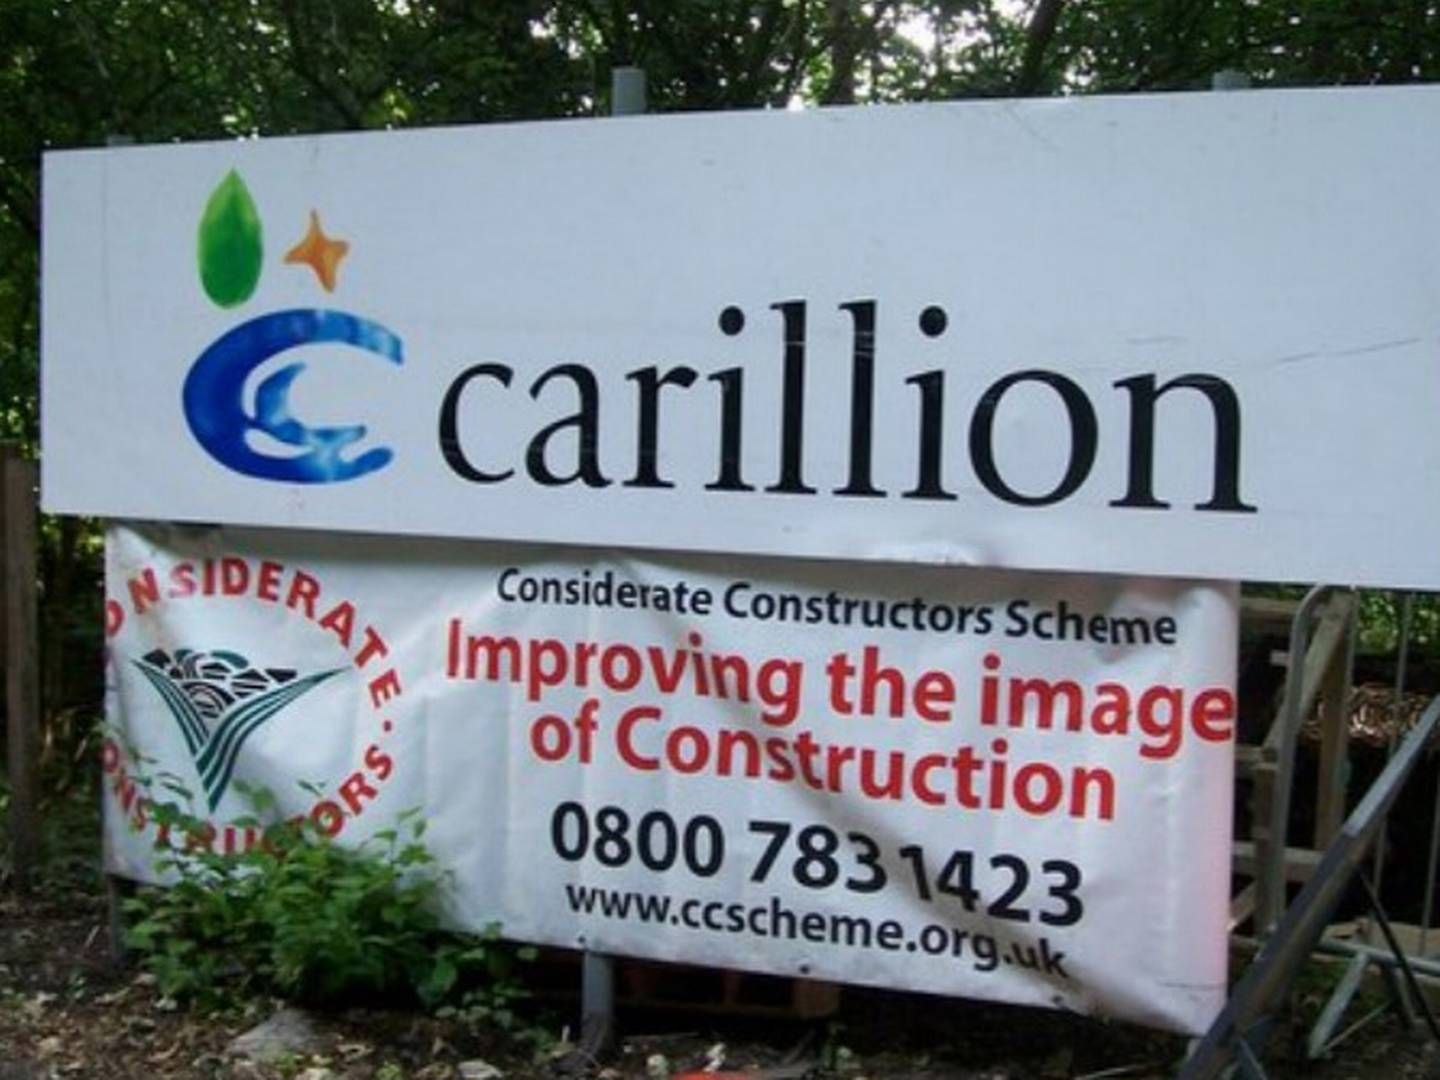 Store, britiske advokatfirmaer beskyldes for at klemme honorarer ud af det kriseramte byggefirma Carillion kort før kollapset | Foto: Parliament.uk